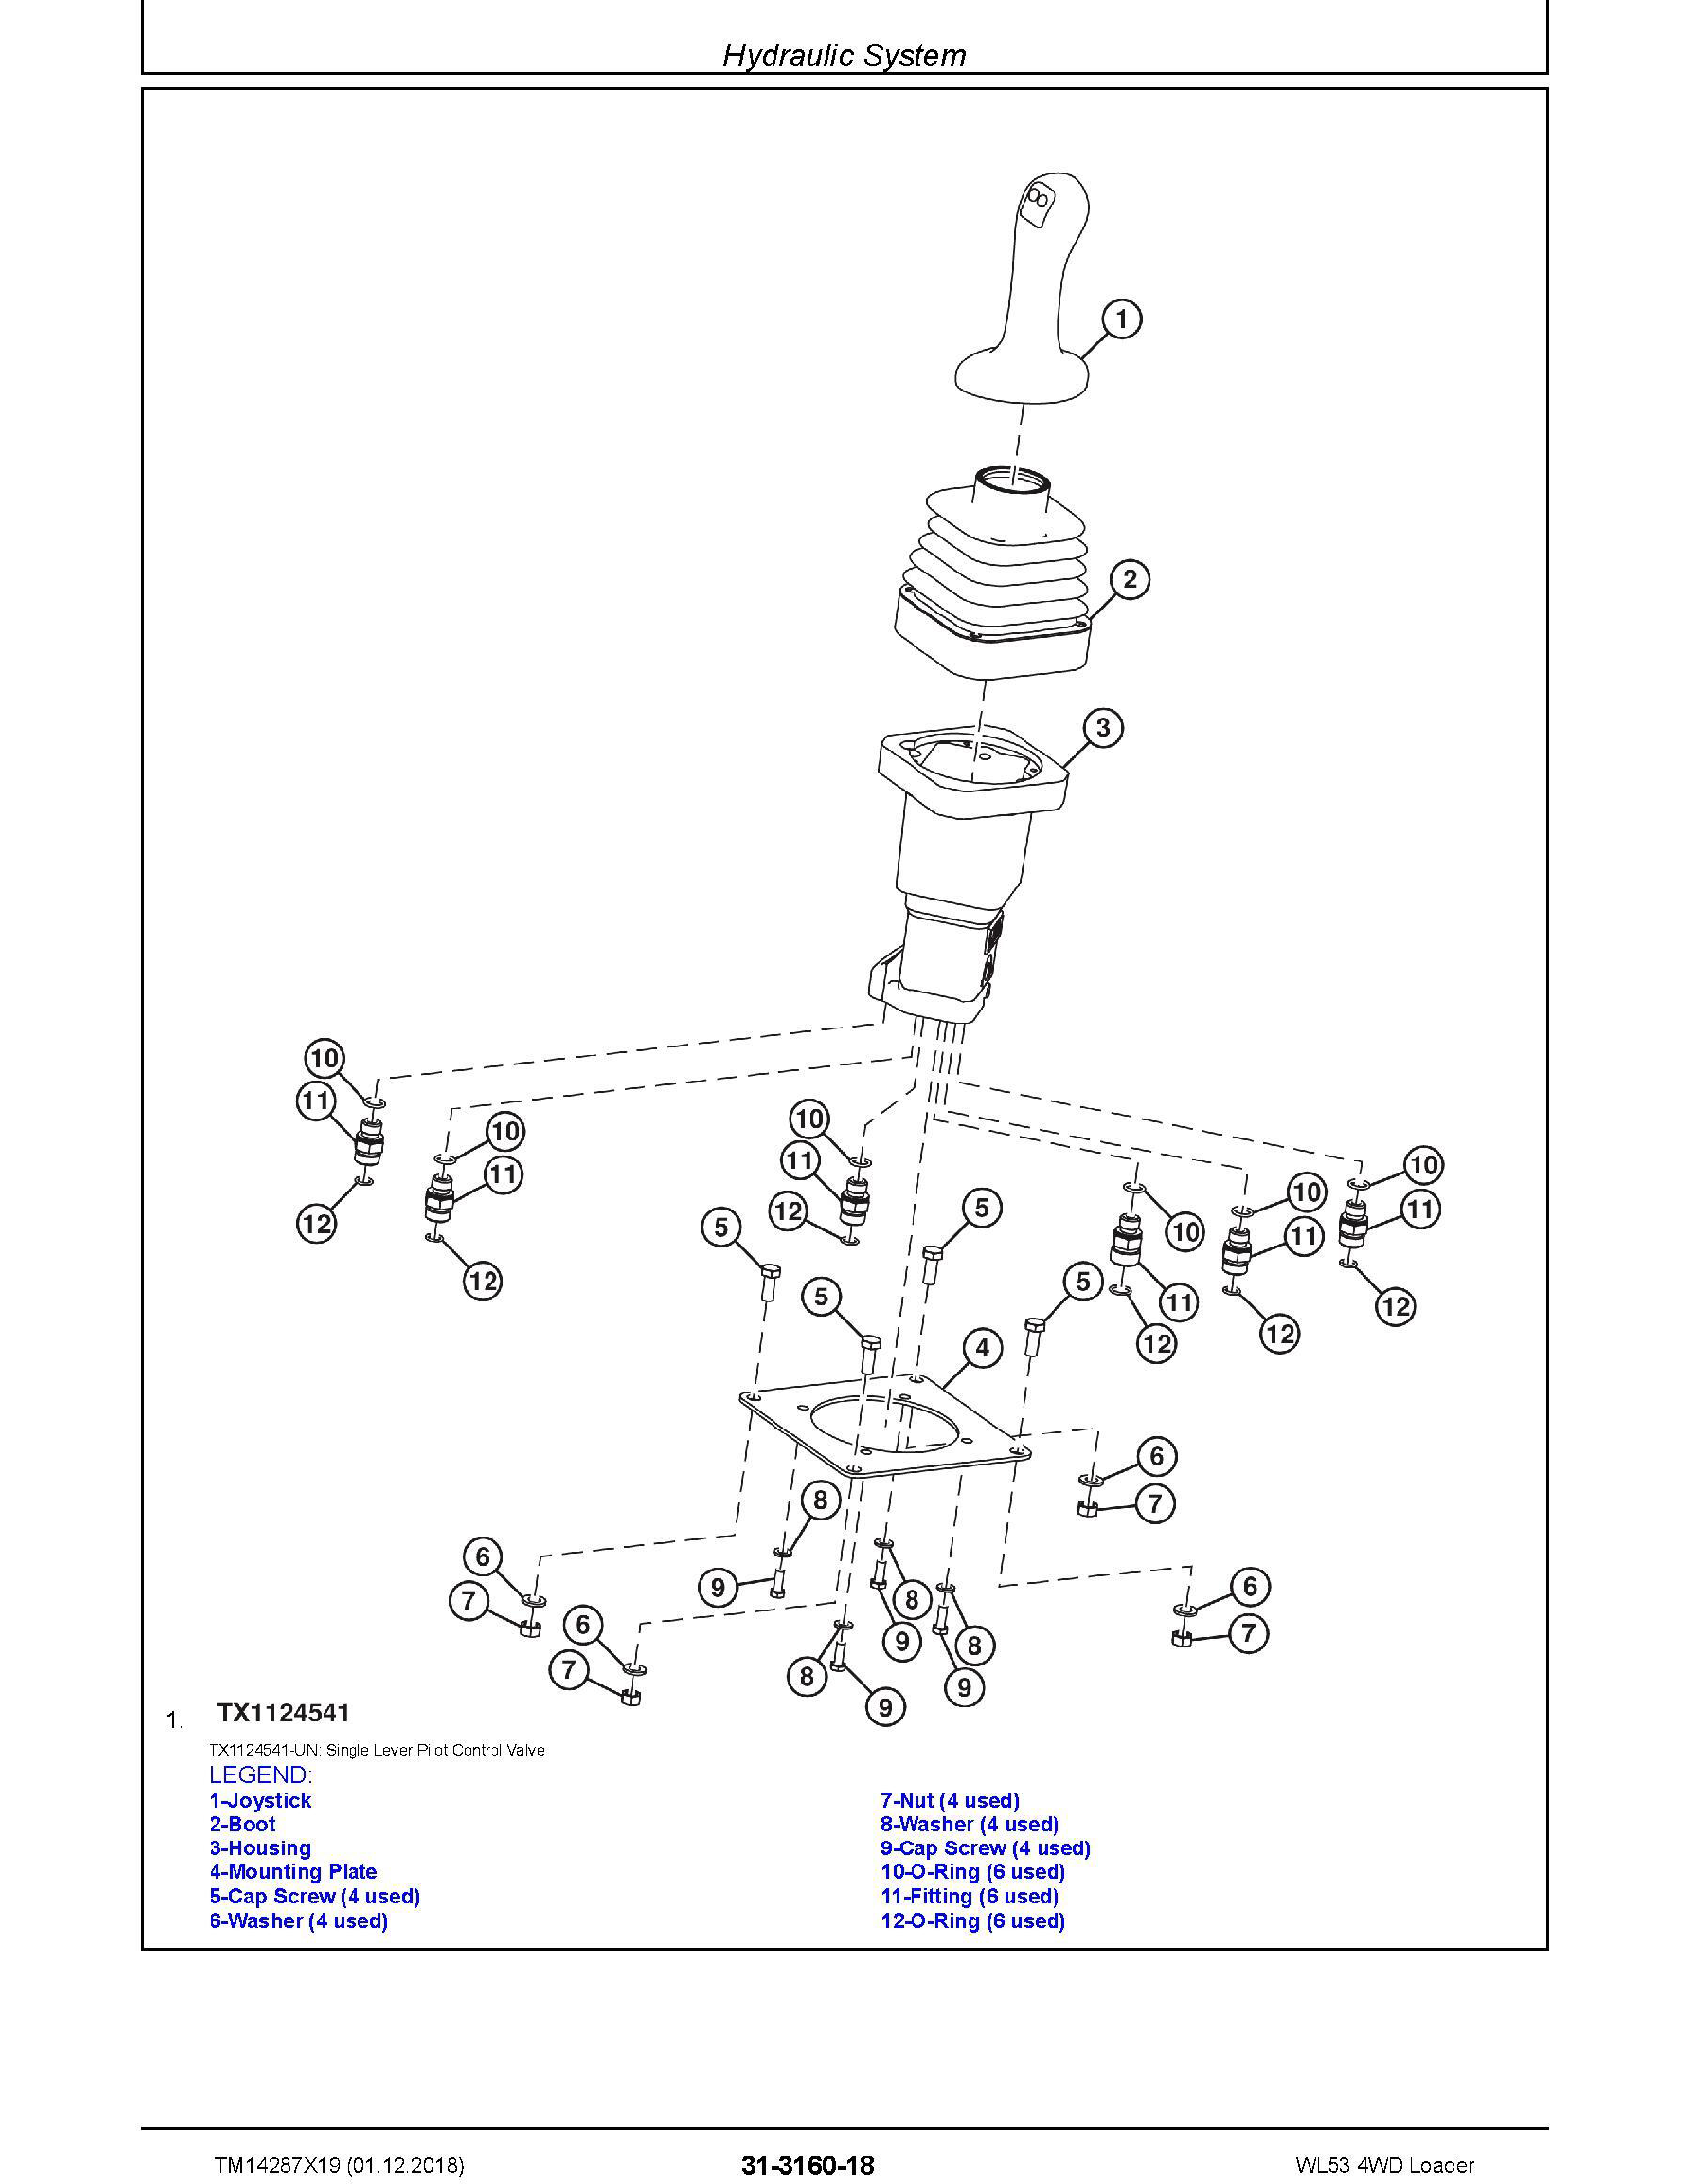 John Deere 759G manual pdf